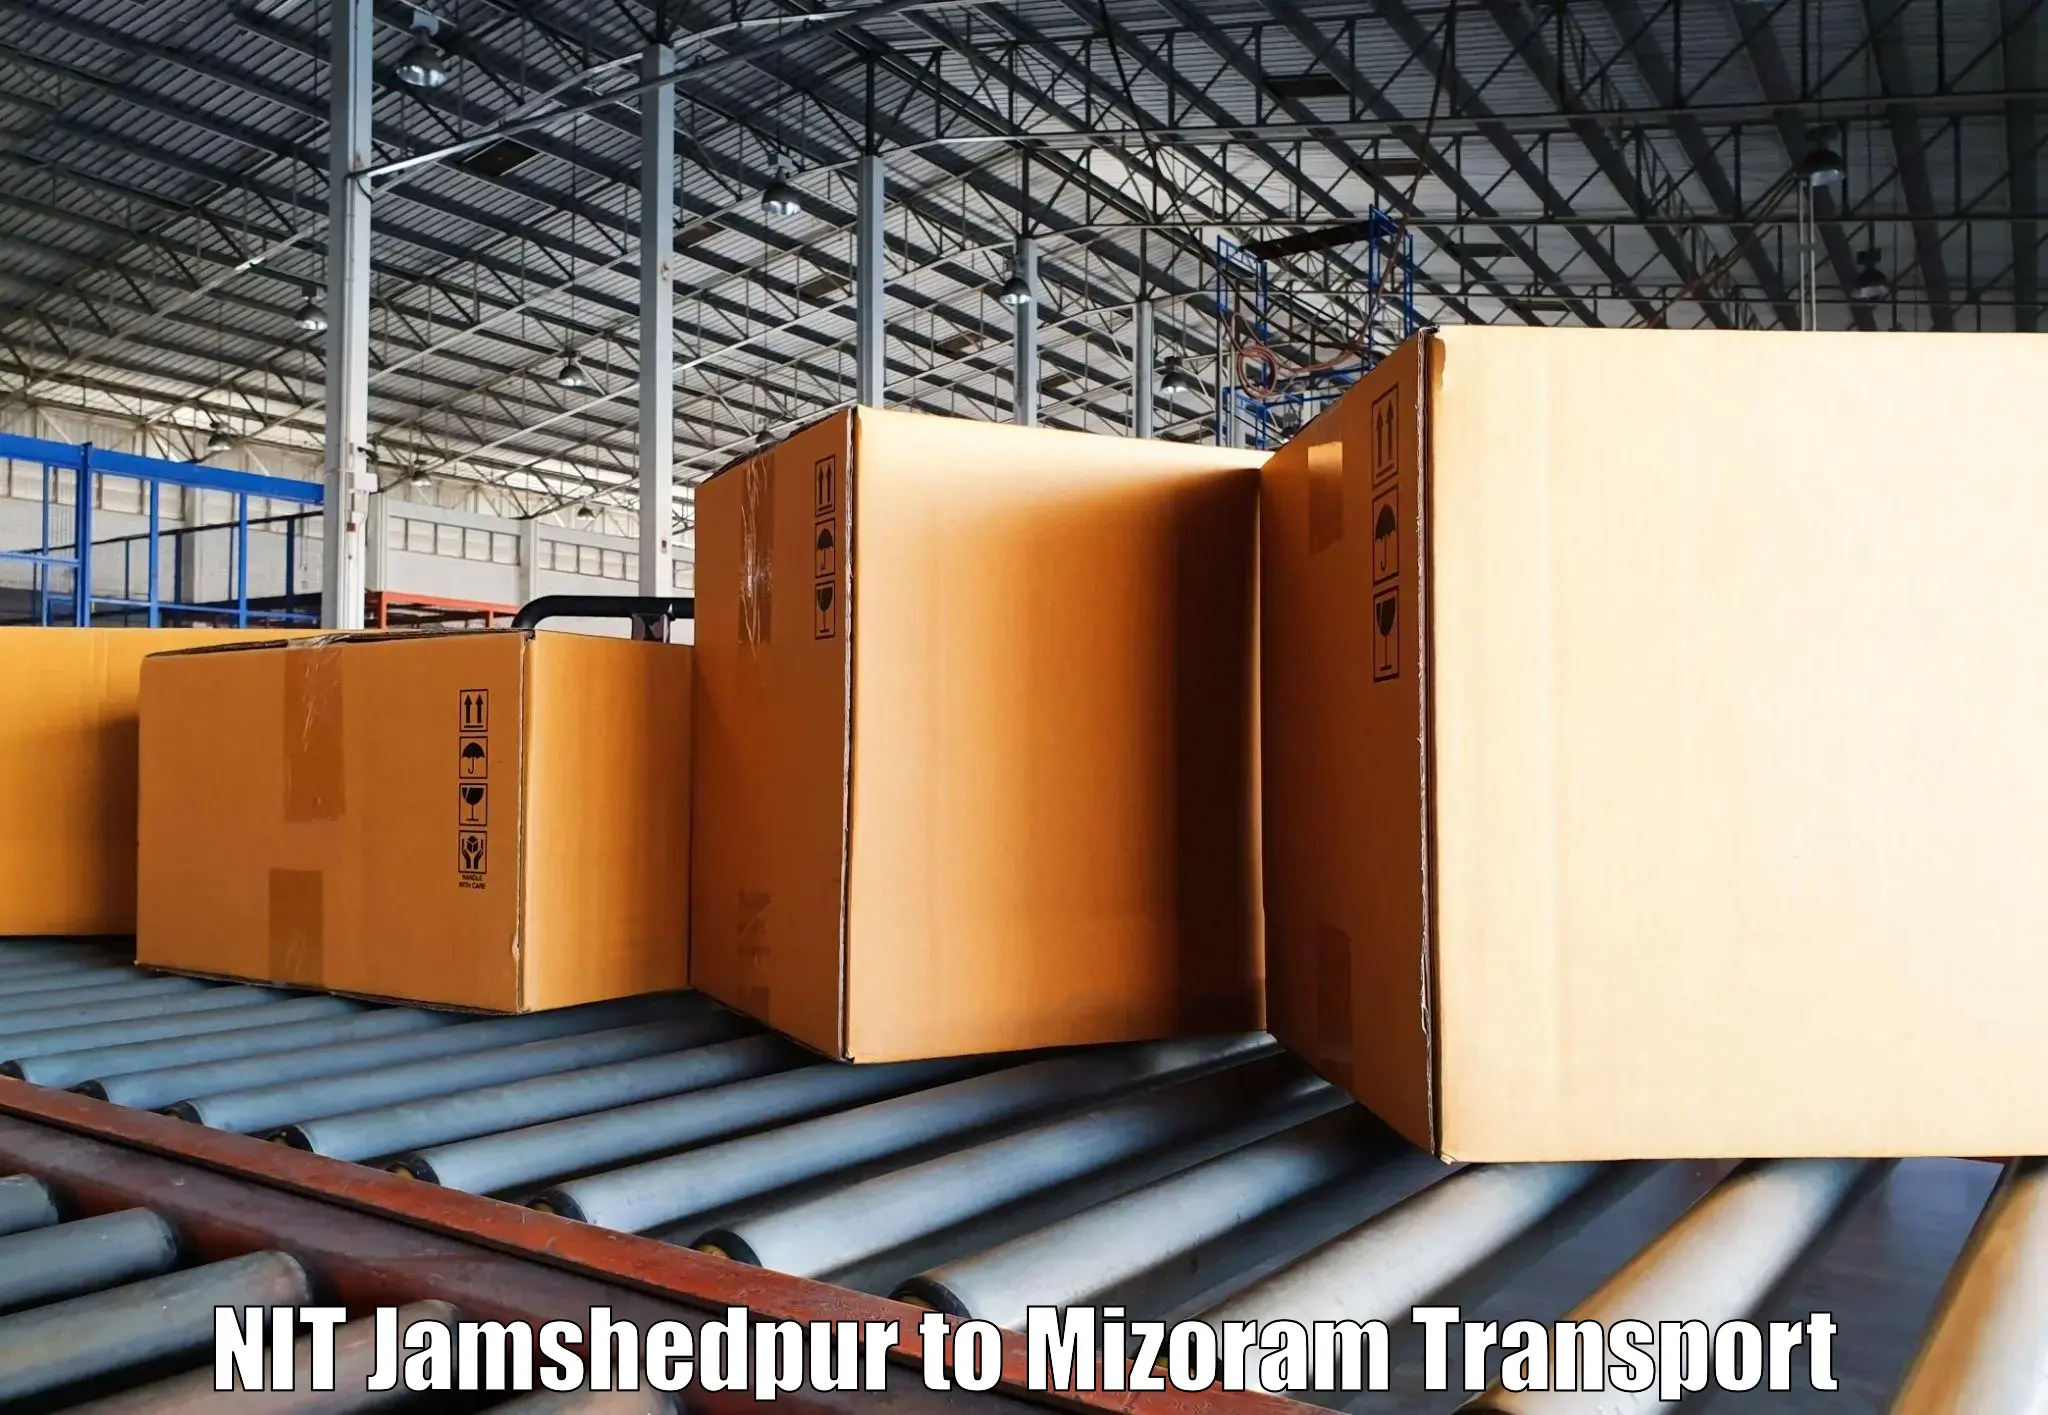 Pick up transport service NIT Jamshedpur to Lawngtlai